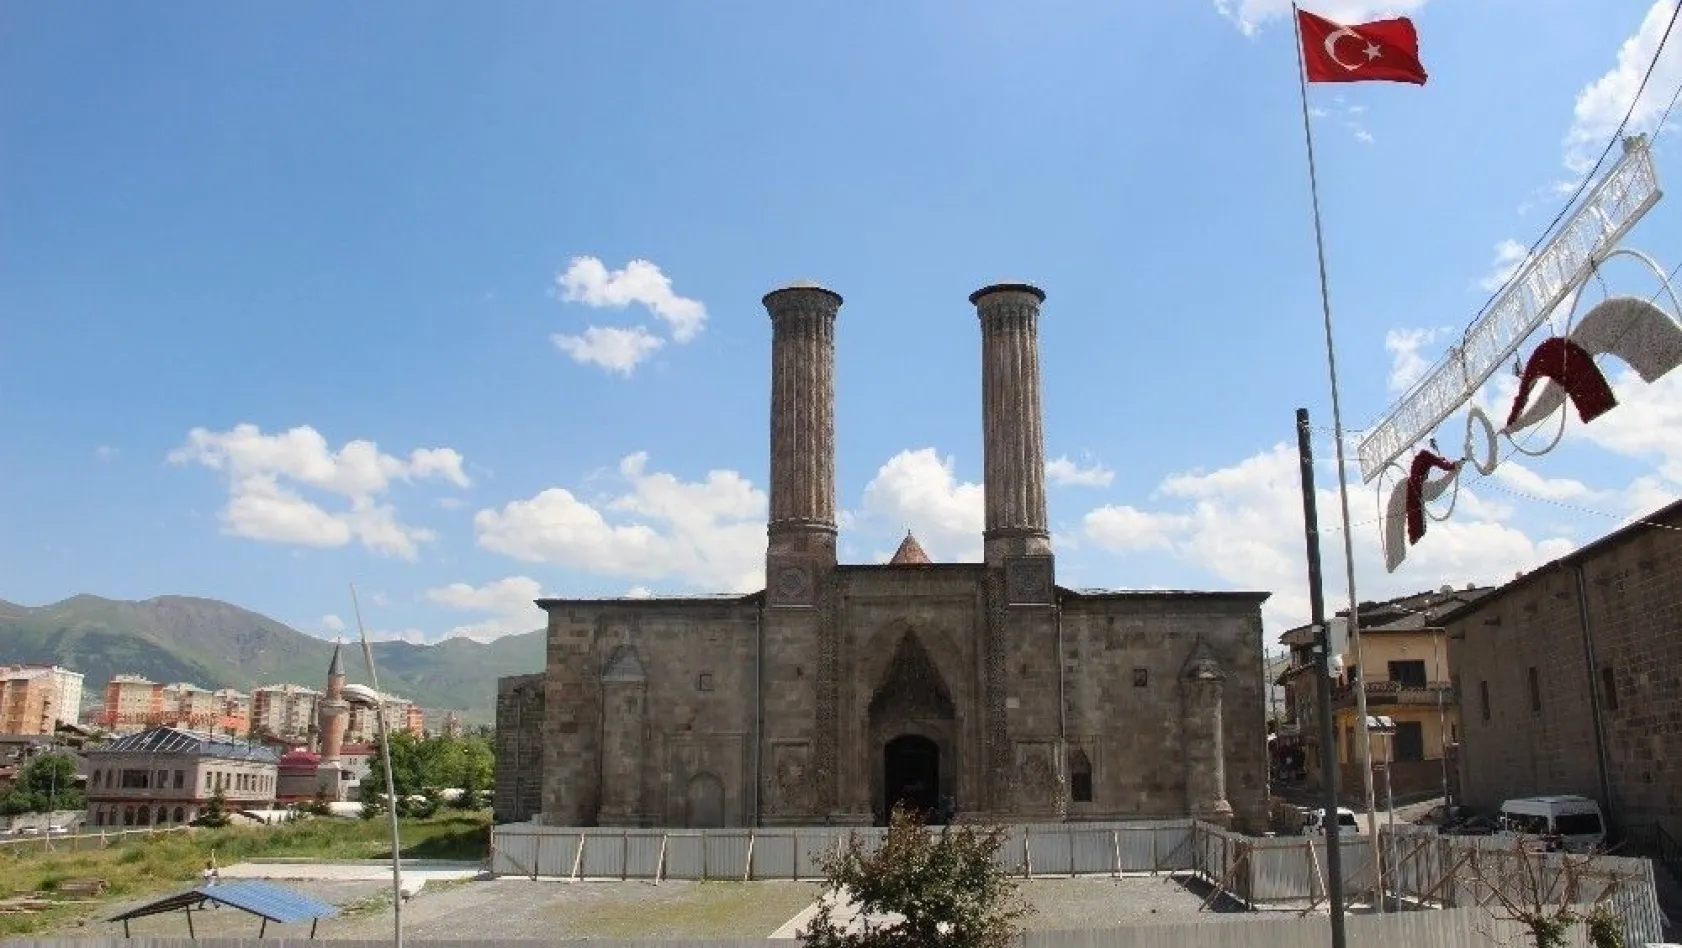 Tarihi Çifte Minareli Medresede çevre düzenlenmesi
